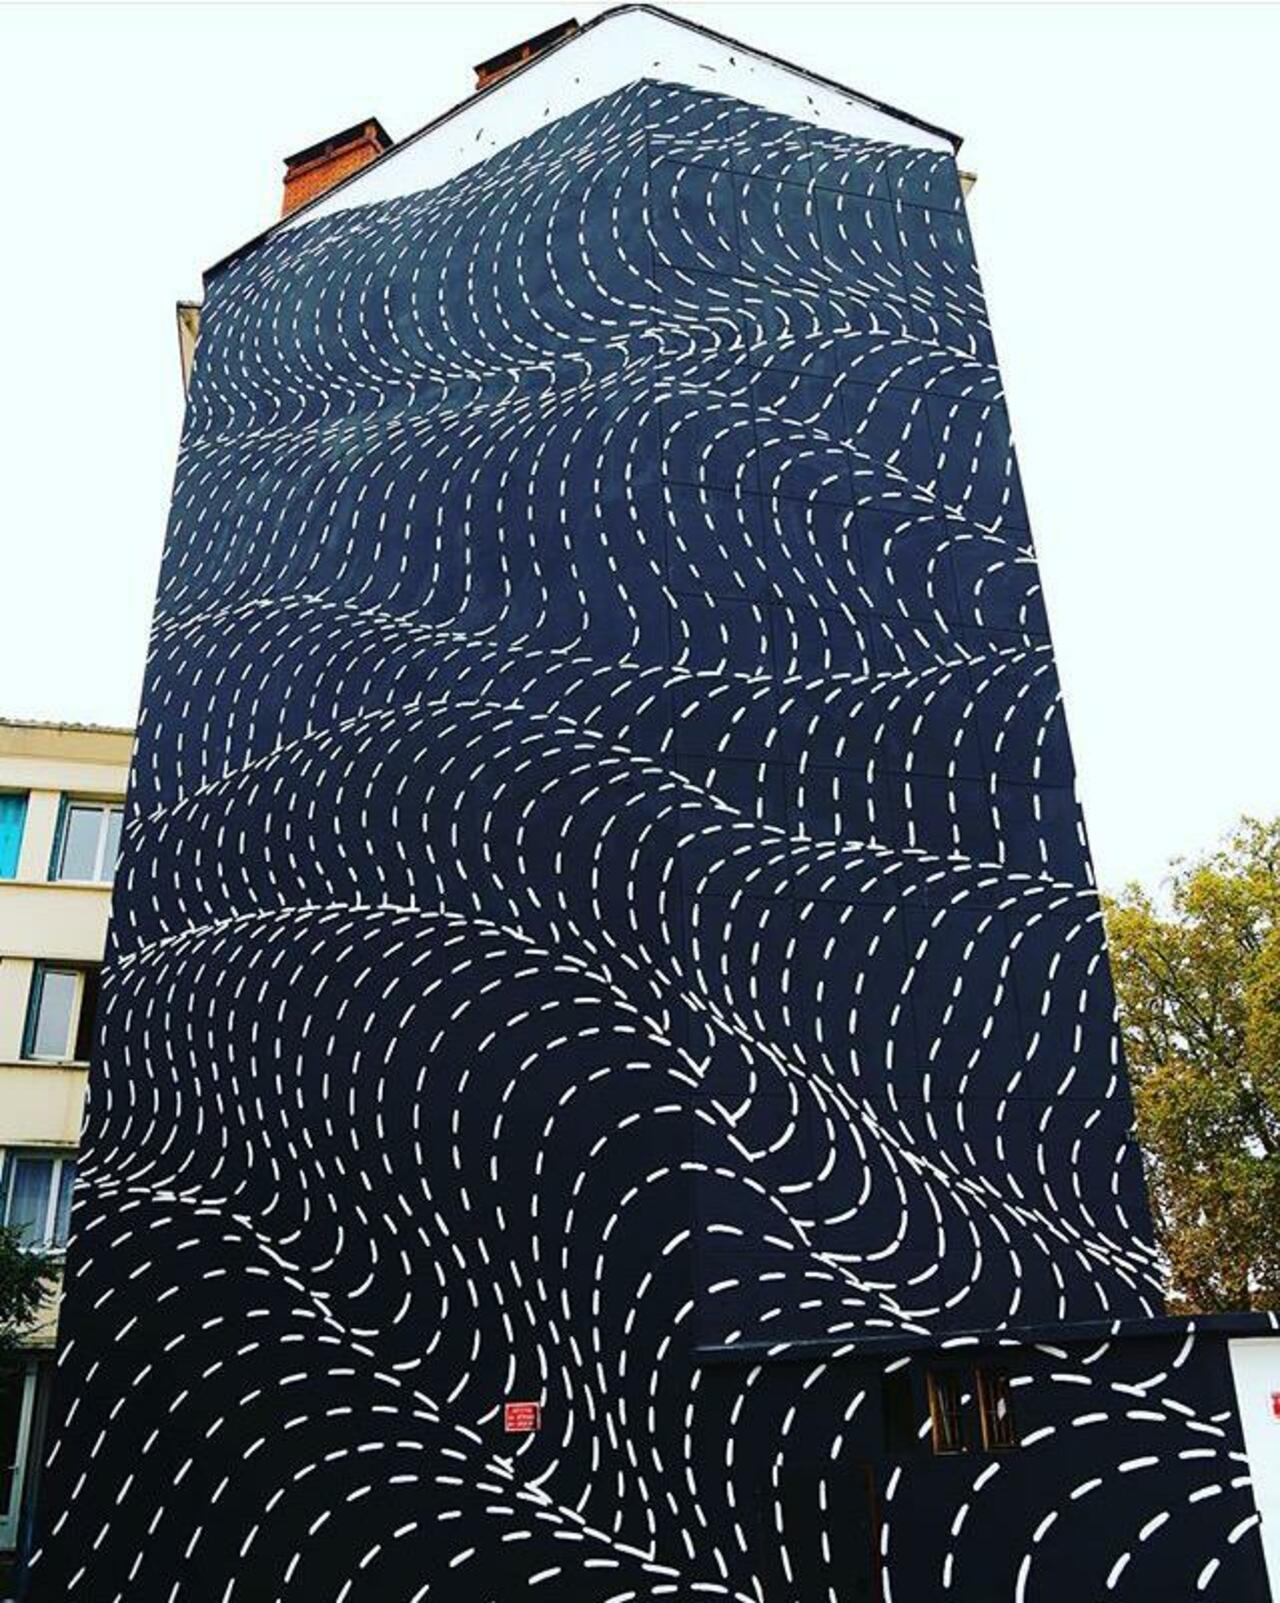 New Street Art by Brendan Monroe's for WOPS ! Festival in Toulouse, France. 

#art #graffiti #mural #streetart https://t.co/VSNZLdy16p